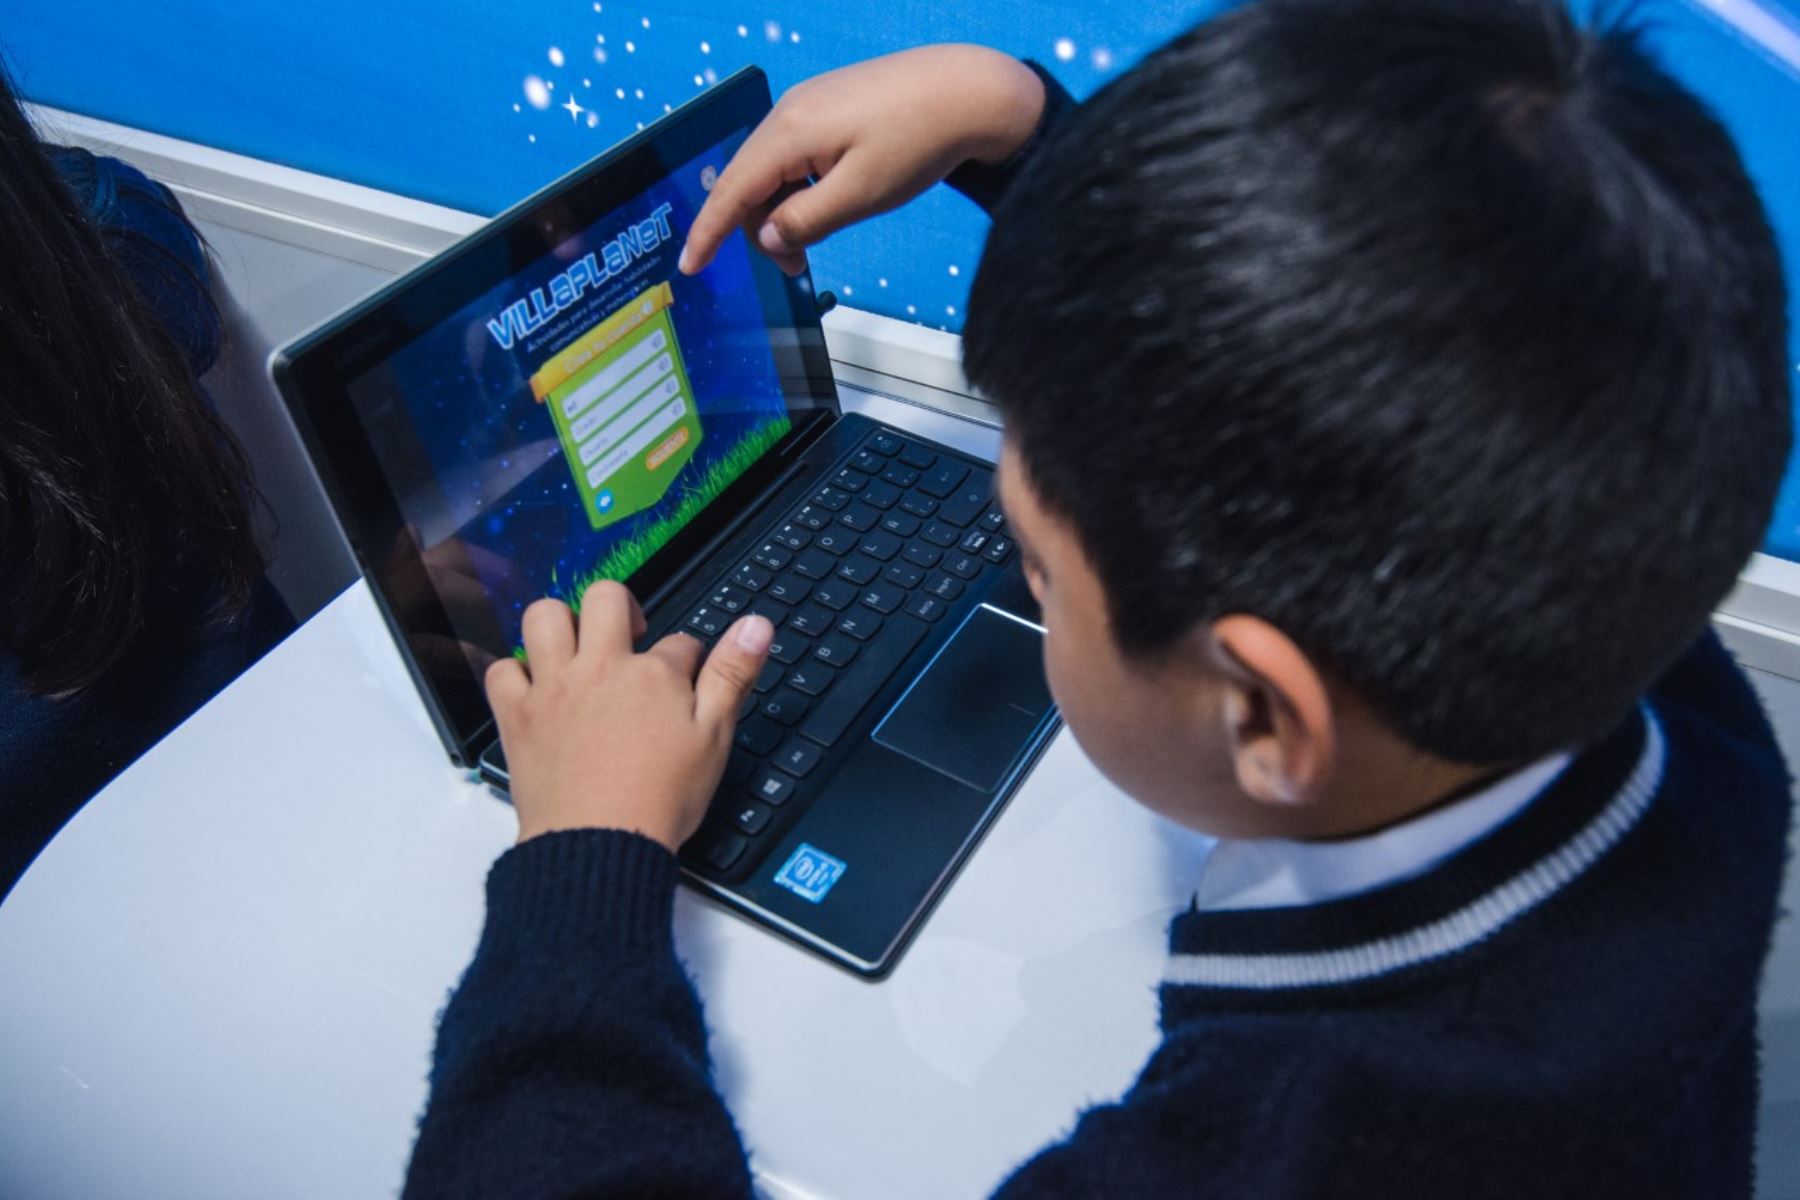 Más de 57,000 estudiantes de Huánuco se beneficiarán con las tabletas electrónicas que distribuye el Ministerio de Educación. ANDINA/Difusión